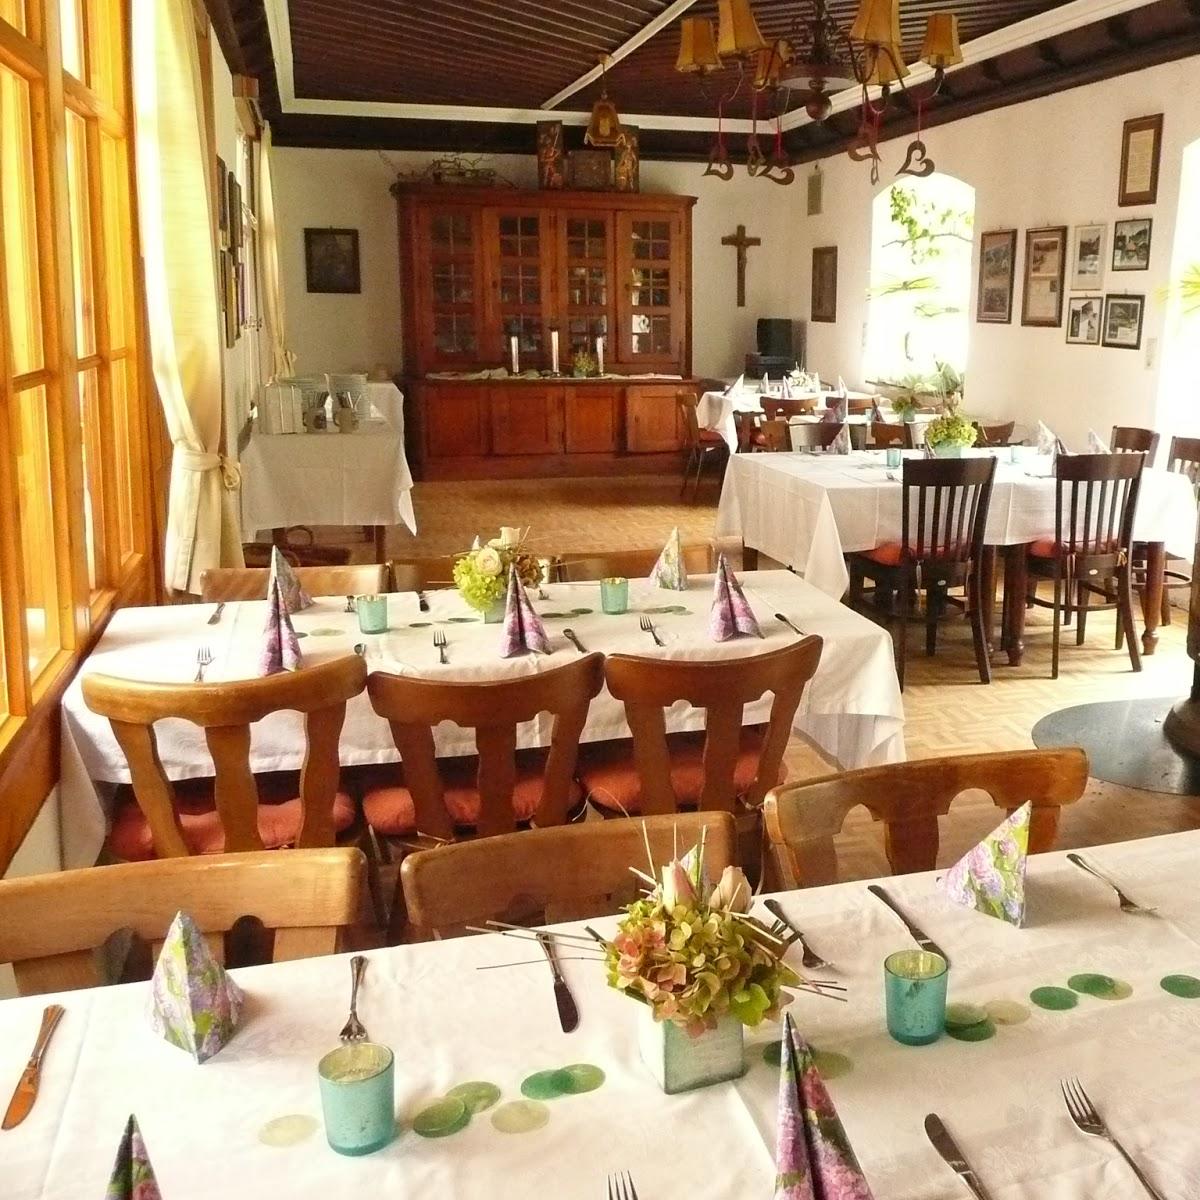 Restaurant "Einsiedelei Klösterl" in Kelheim